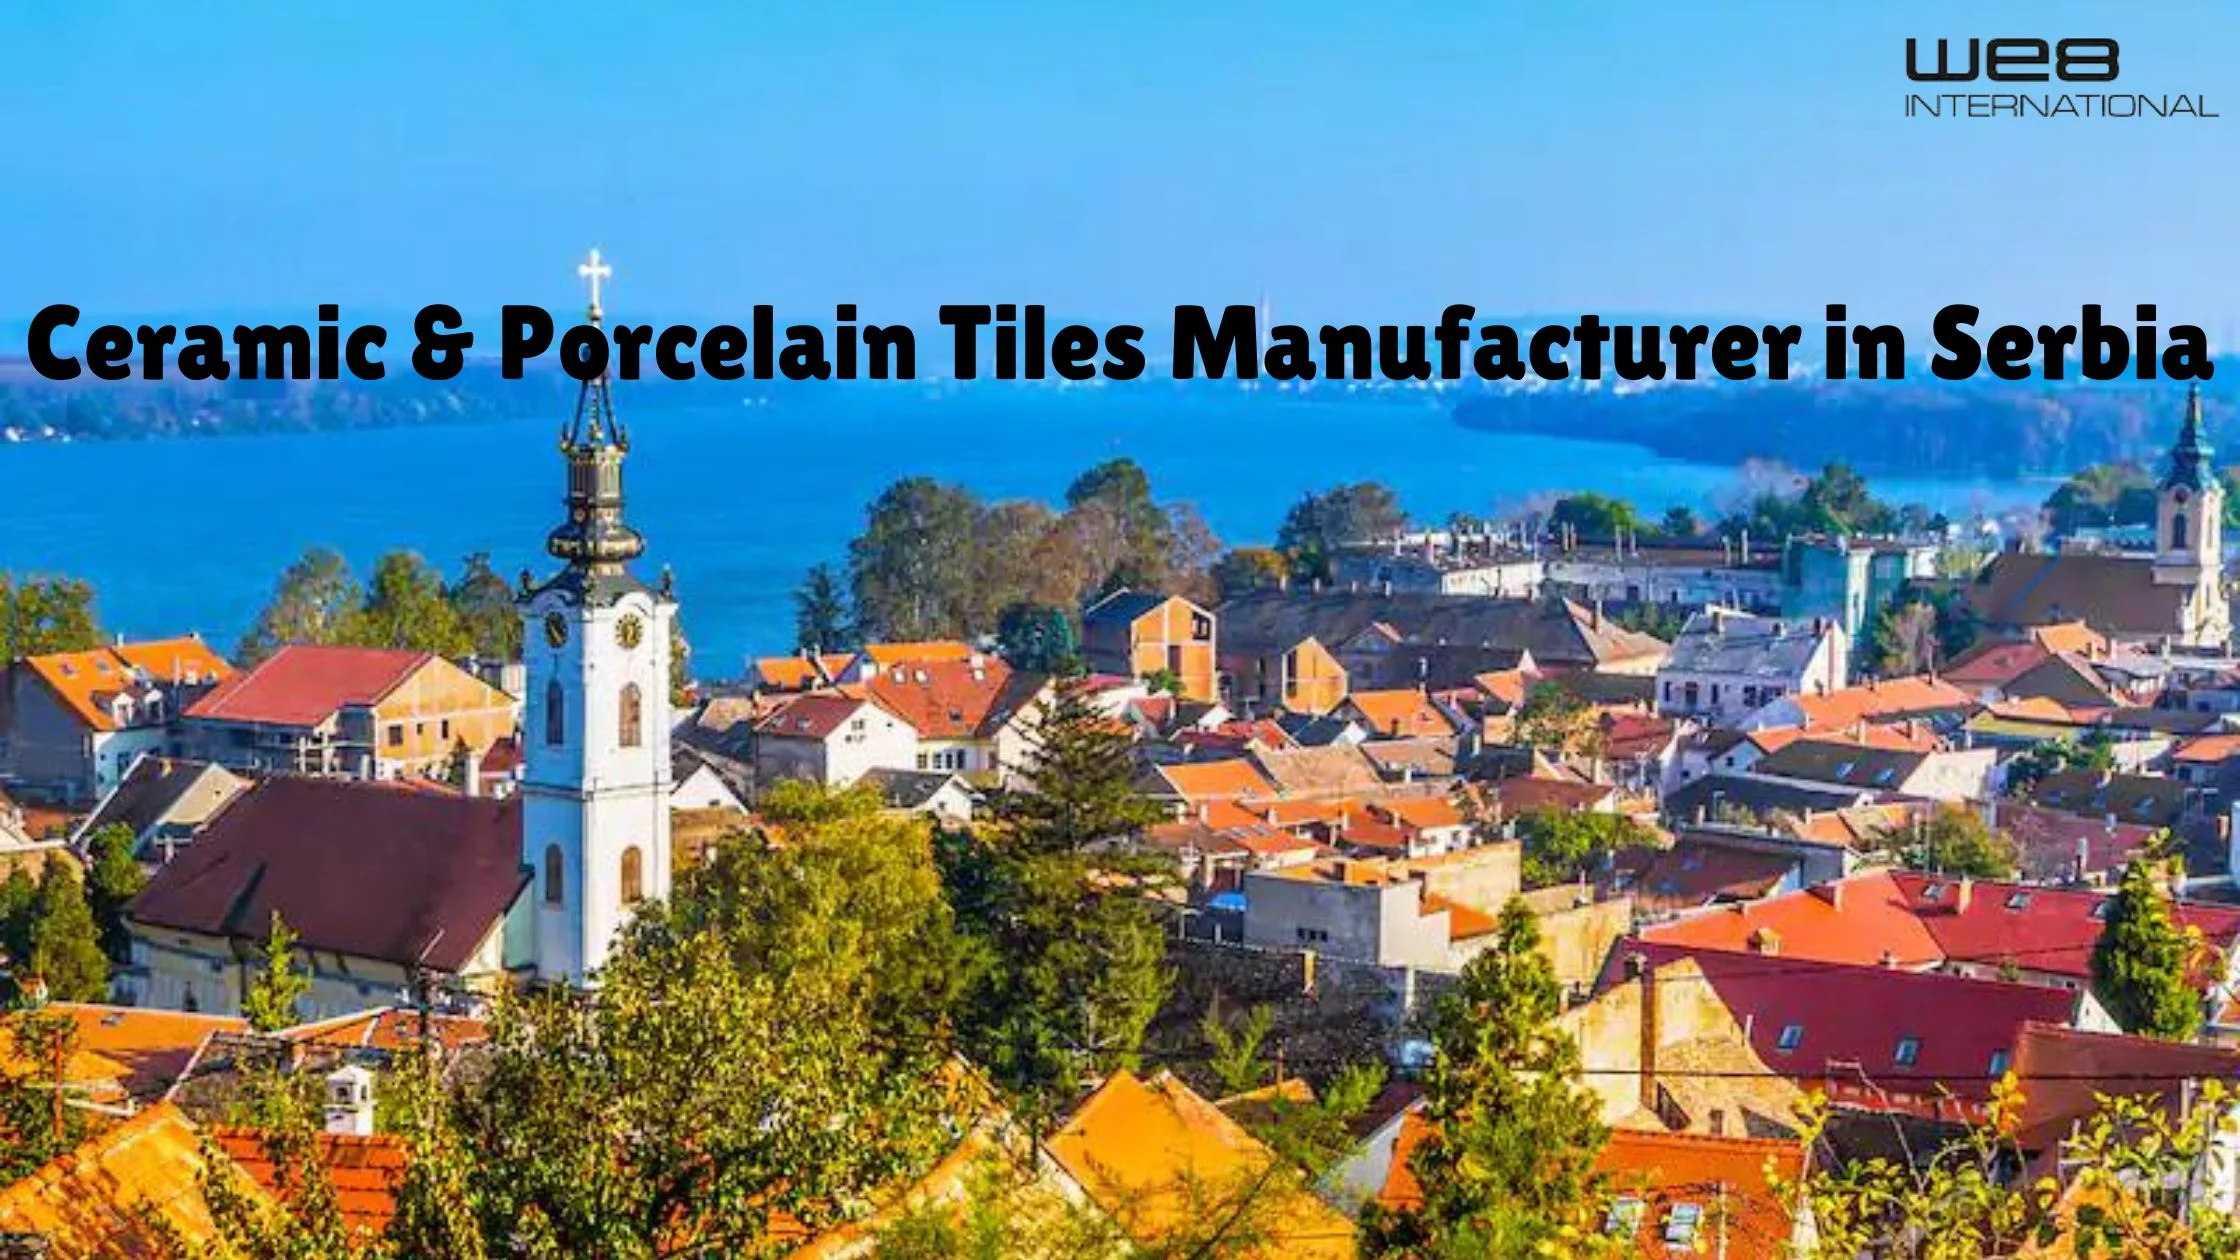 Ceramic & Porcelain Tiles Manufacturer in Serbia